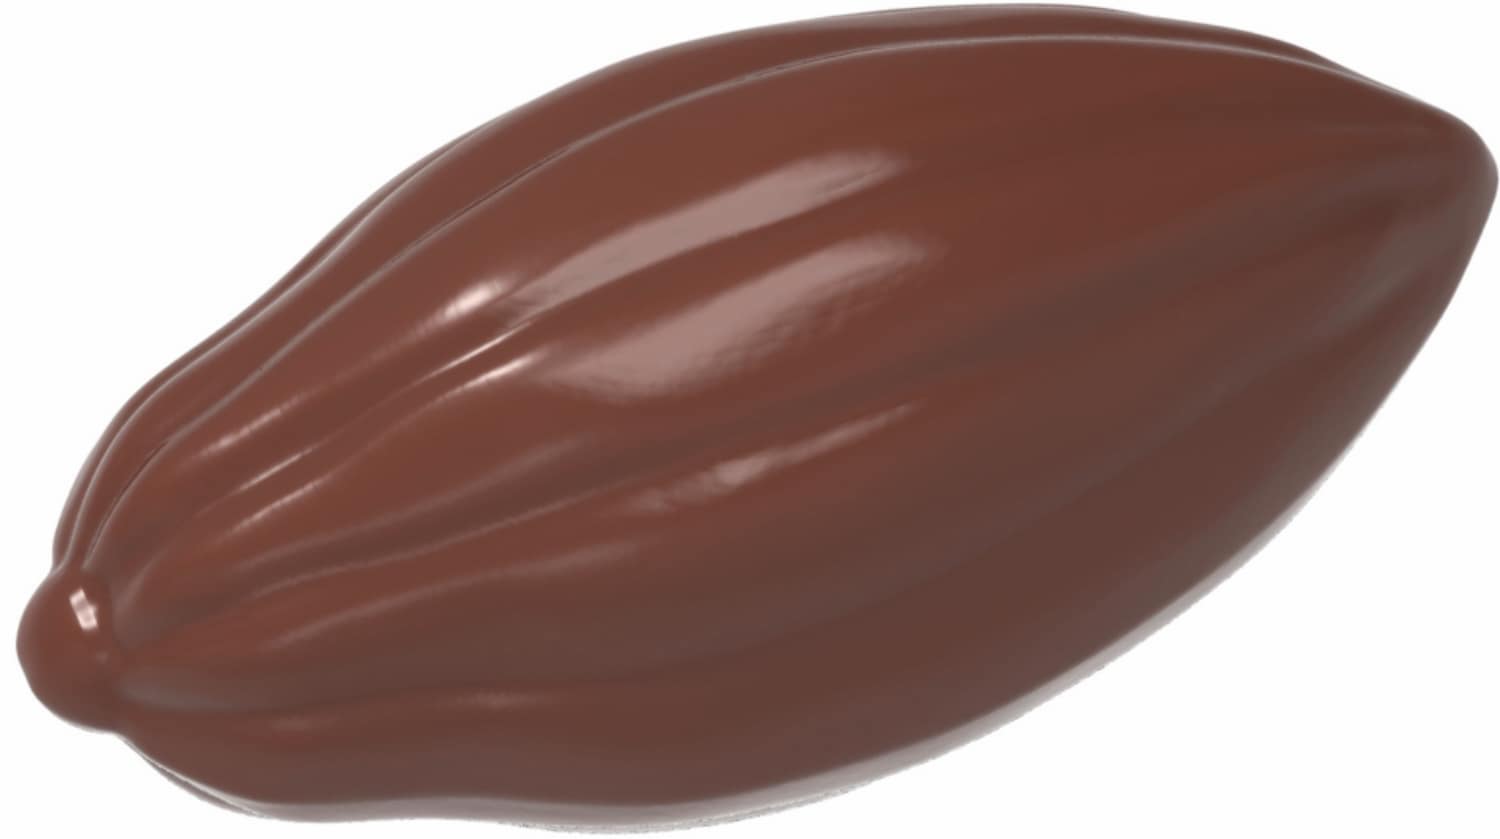 Schokoladenform "Kakaobohne" 421919